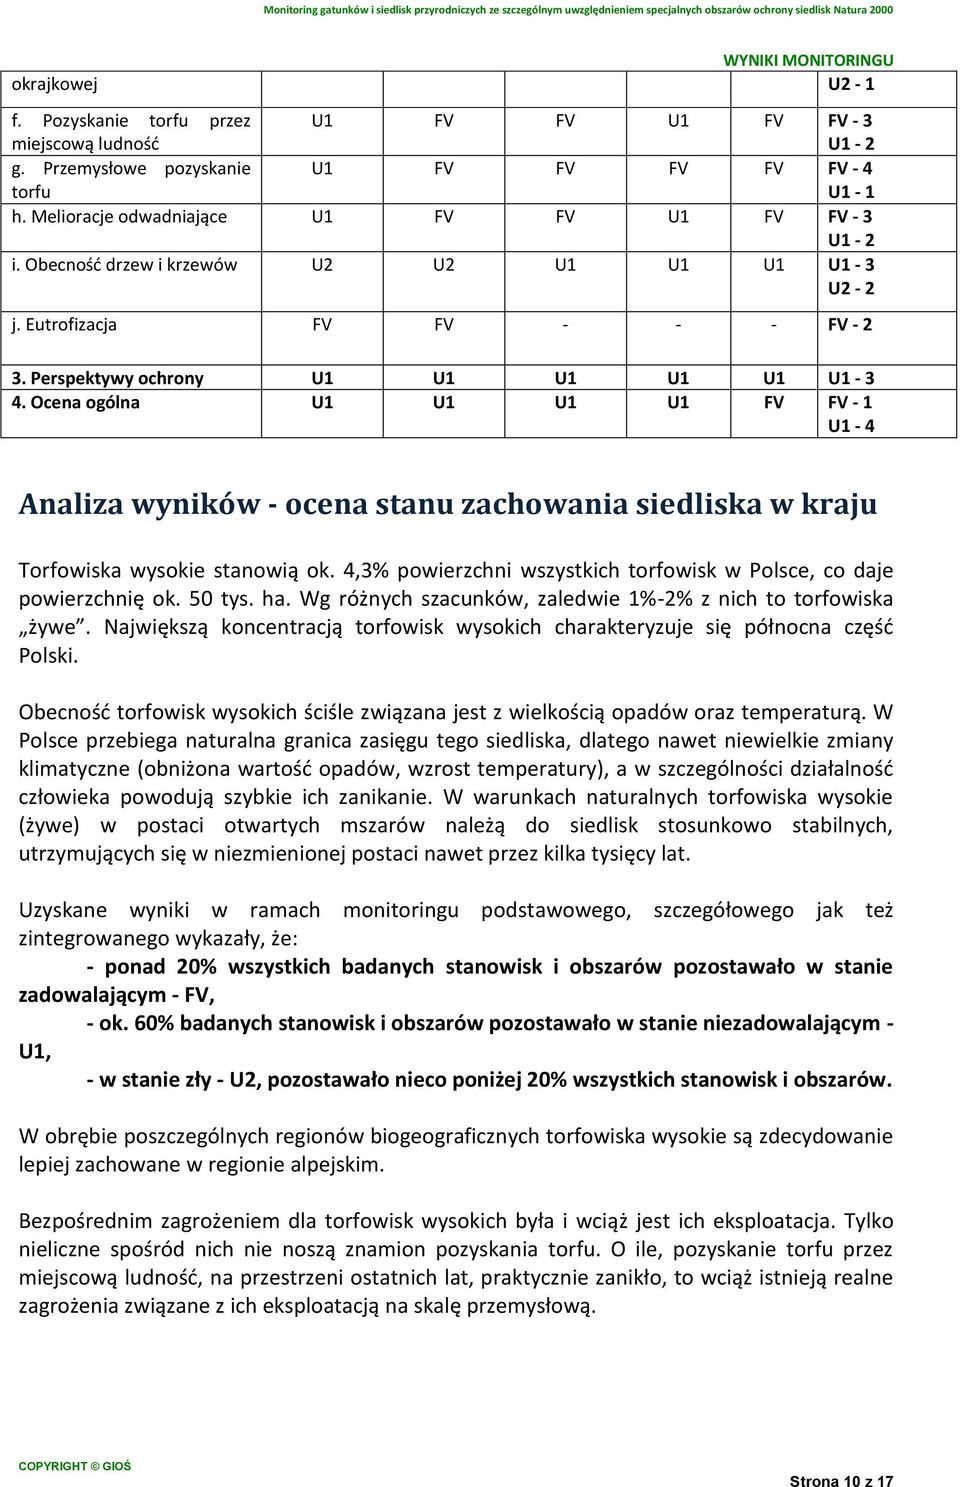 Ocena ogólna U1 U1 U1 U1 FV Analiza wyników - ocena stanu zachowania siedliska w kraju Torfowiska wysokie stanowią ok. 4,3% powierzchni wszystkich torfowisk w Polsce, co daje powierzchnię ok. 50 tys.